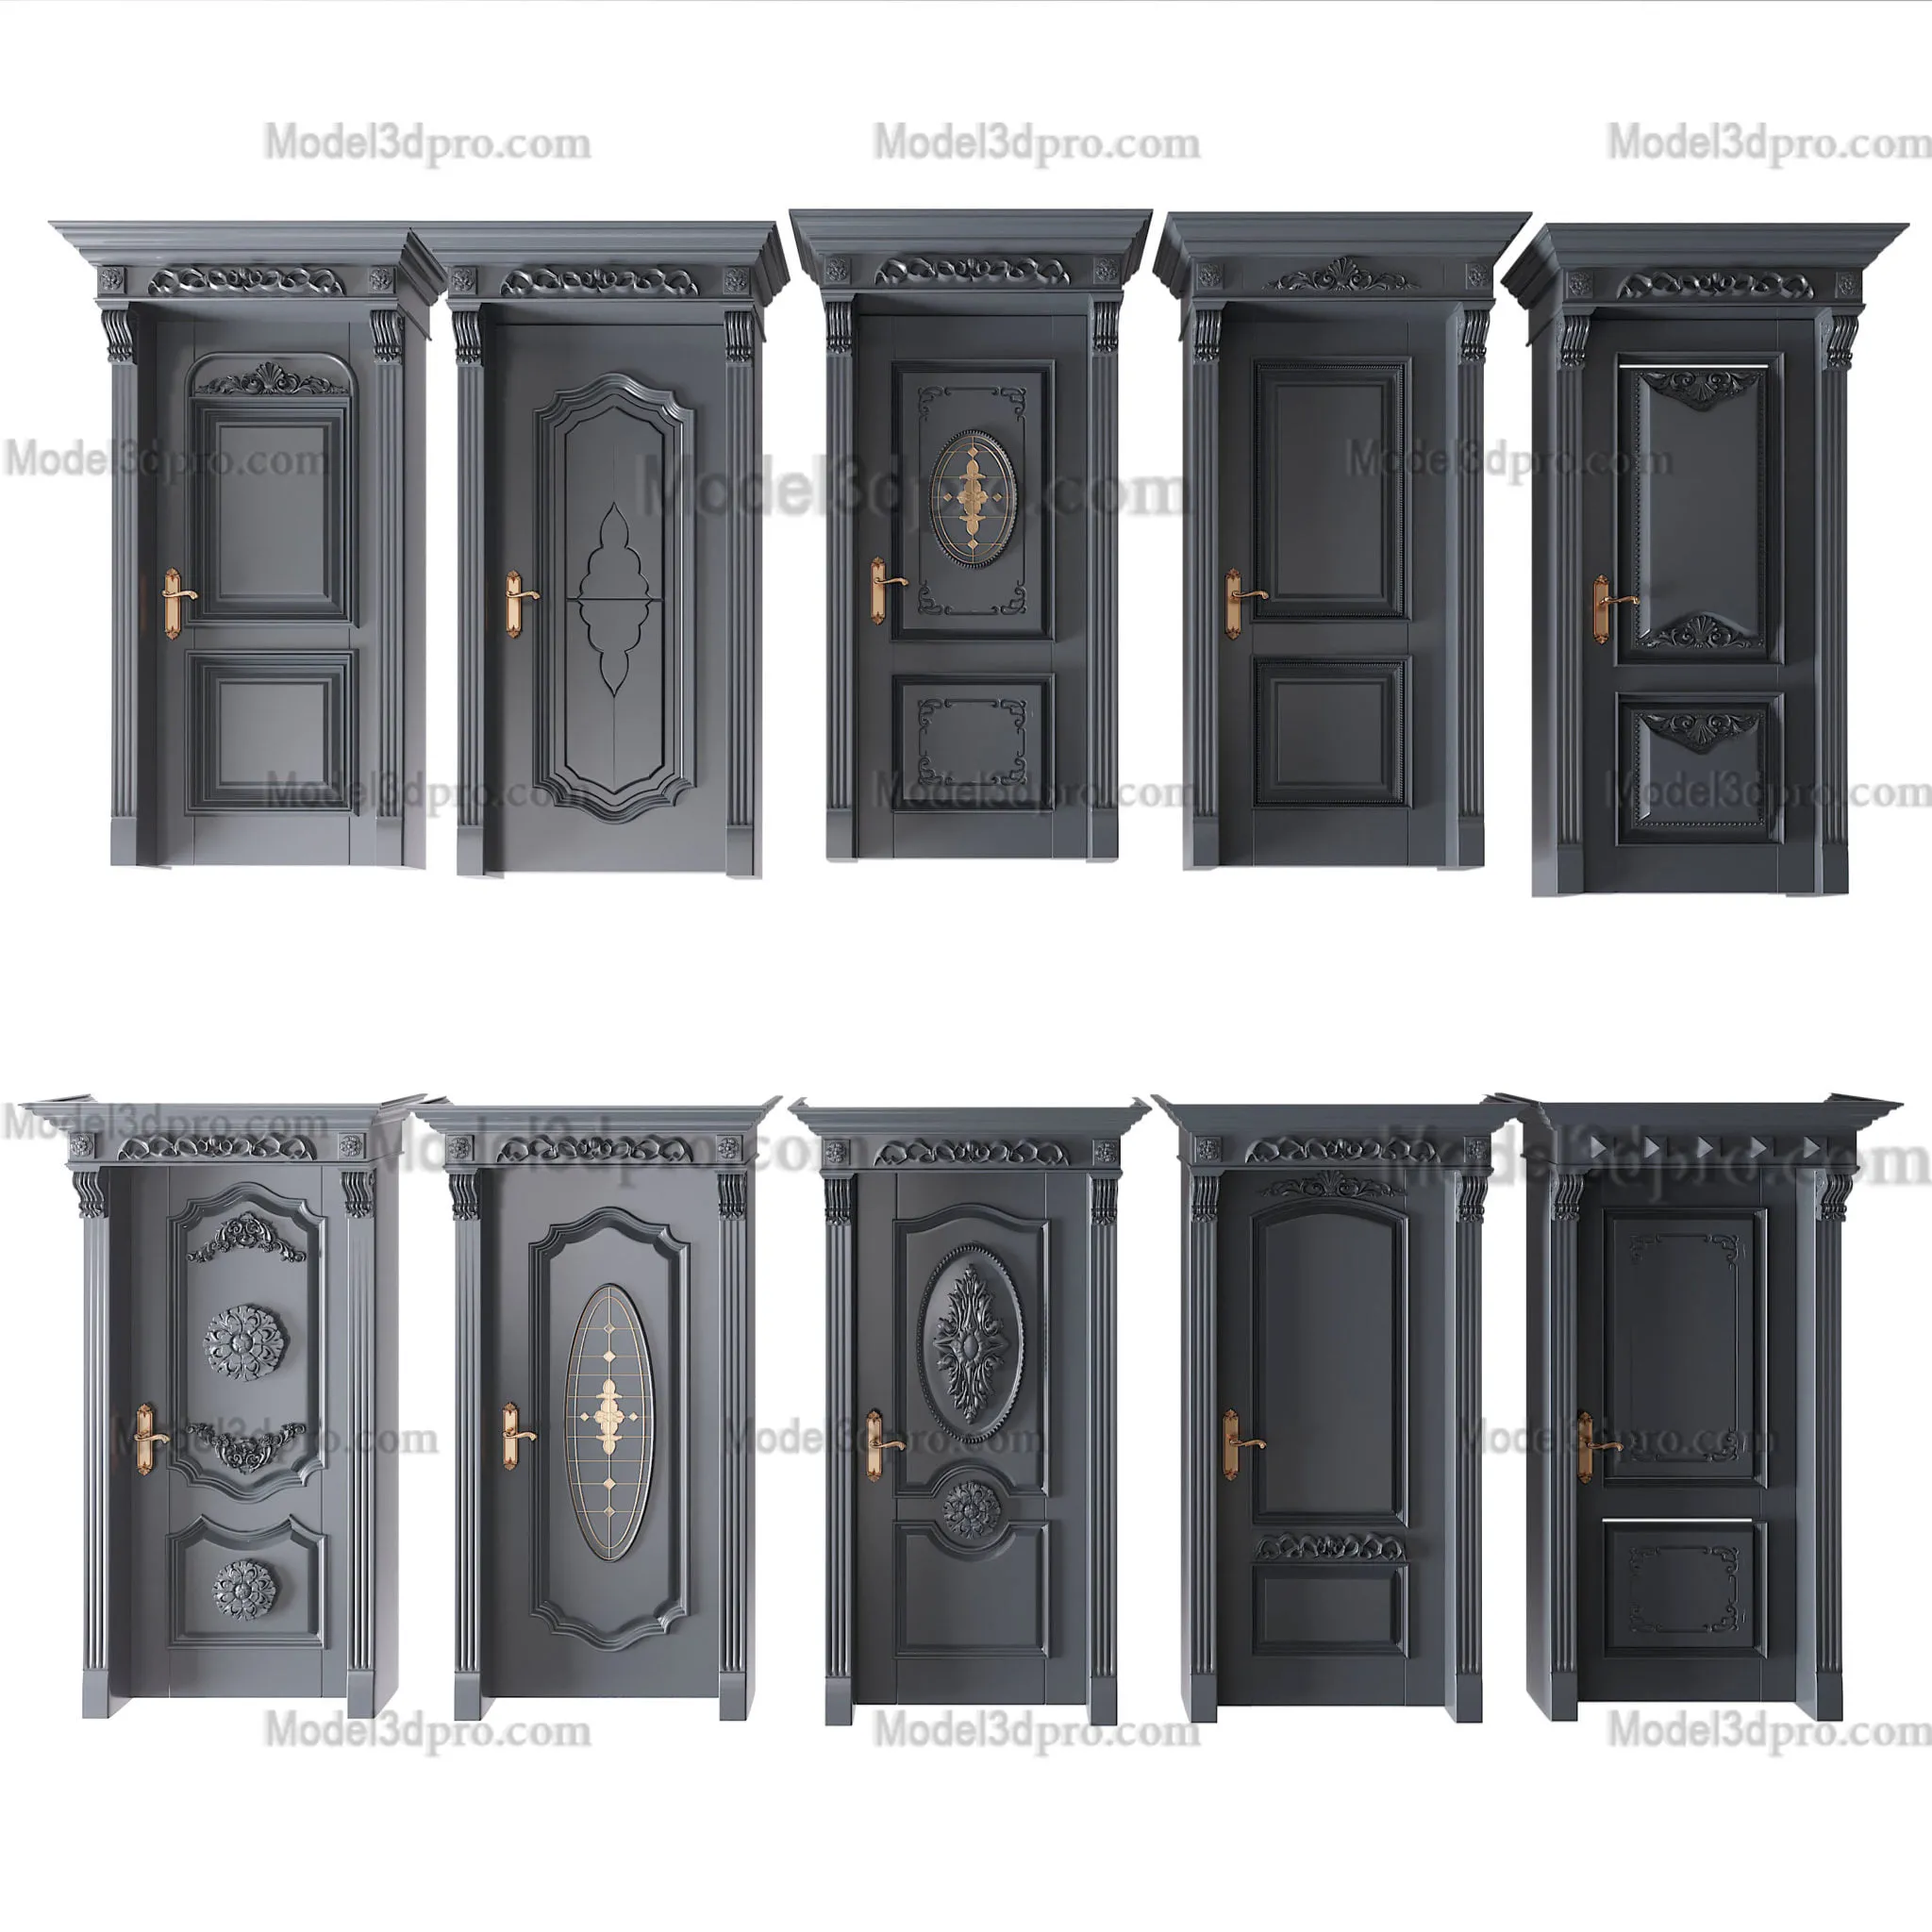 3ds Max Files – Model – 9 – Door – 3 – Door Model by x